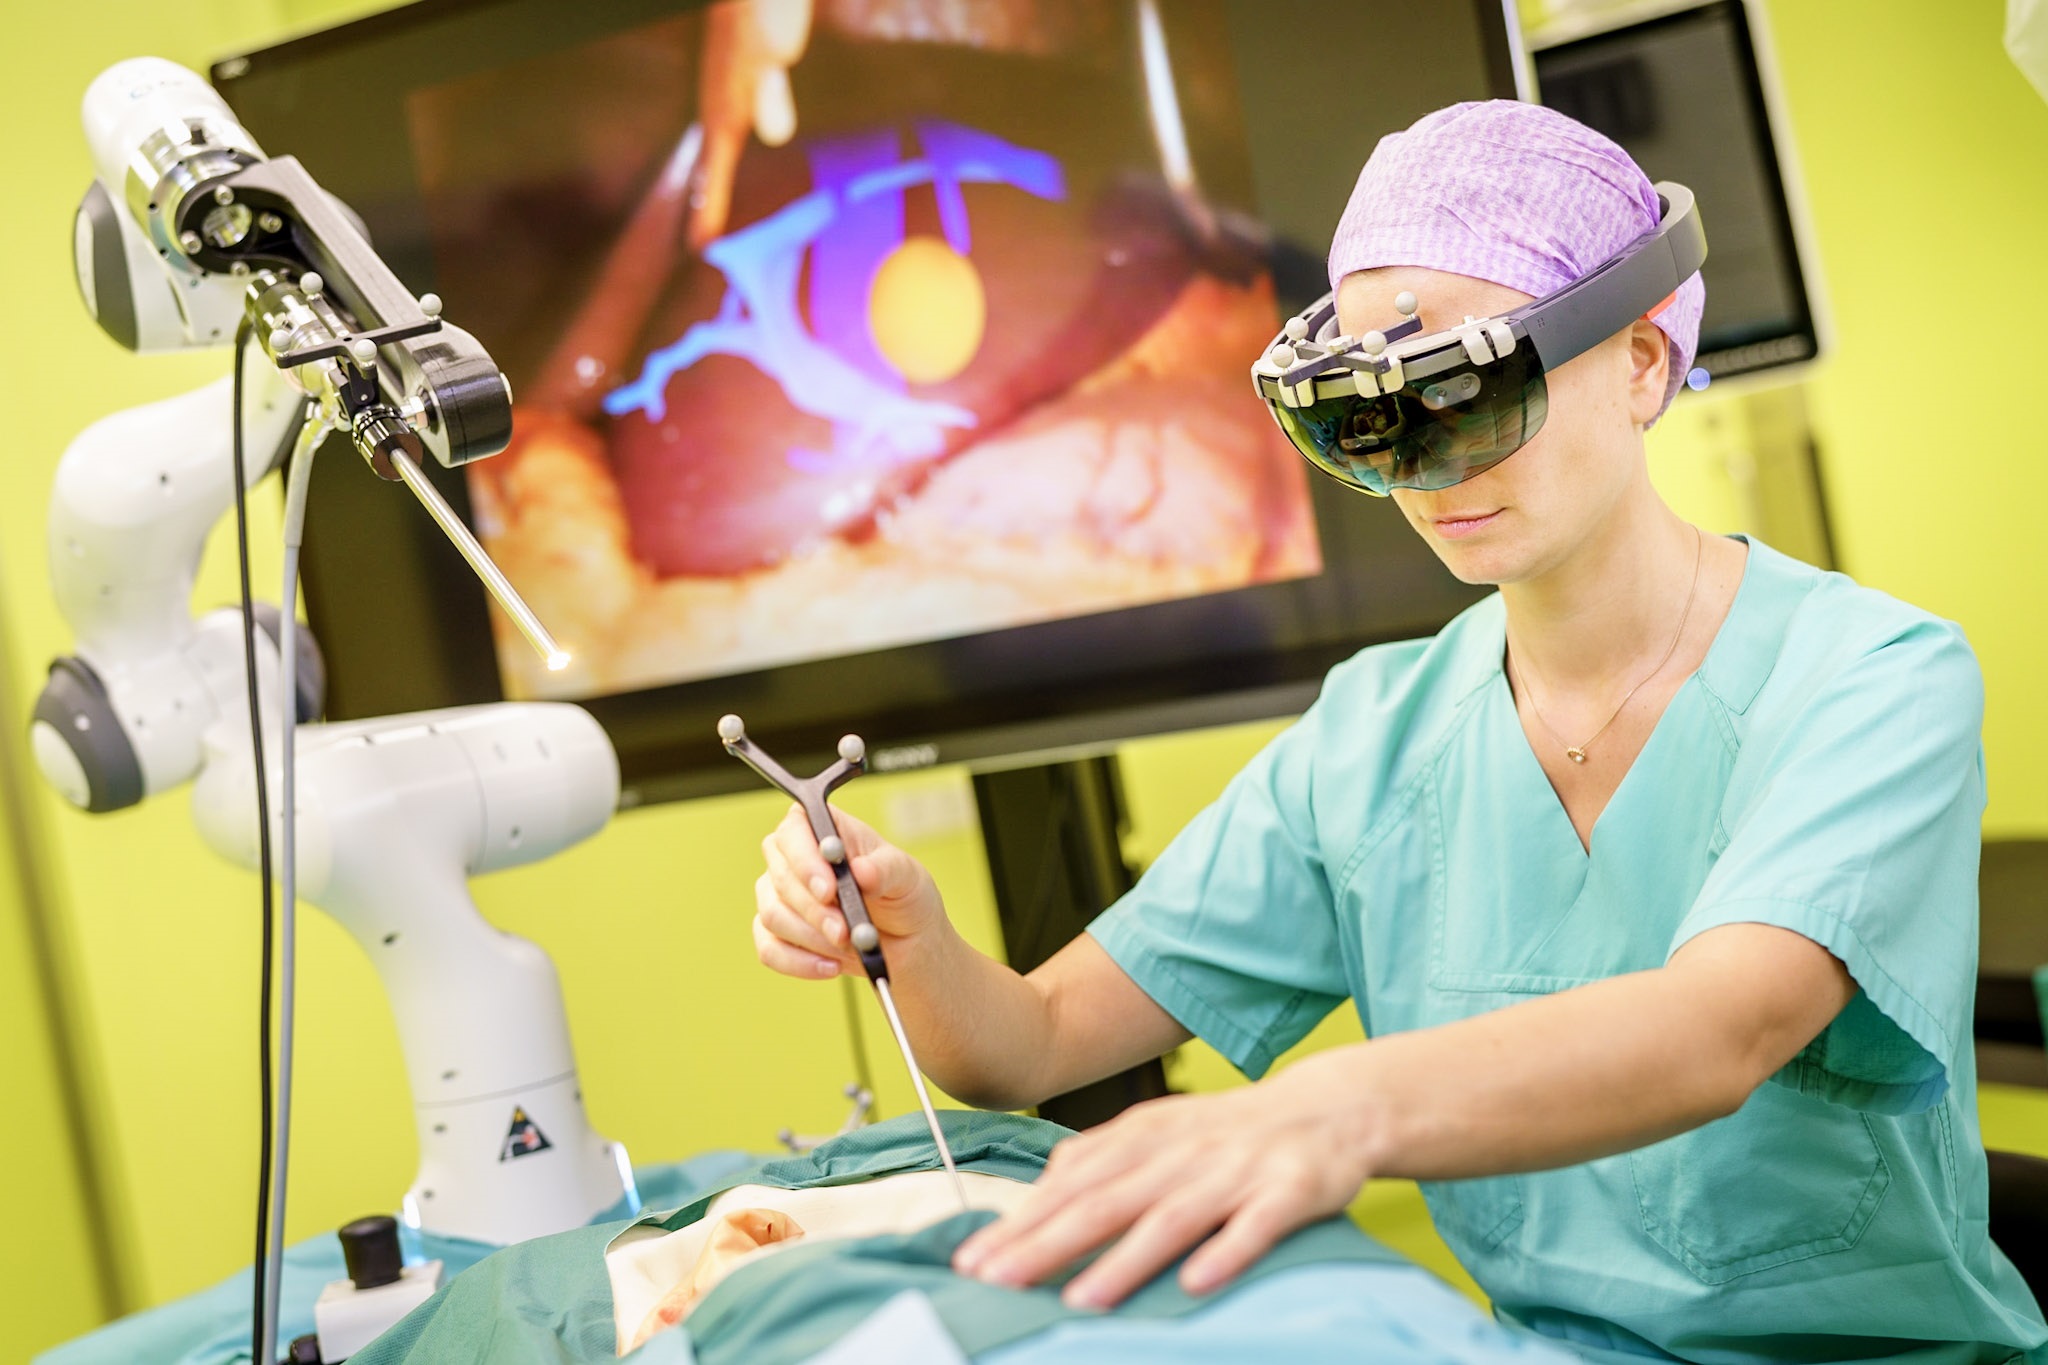 Ein Arzt operiert einen Plastikkörper und wird dabei von einem Roboterarm unterstützt. Hinter dem Arzt ist ein Bildschirm mit menschlichen Organen zu sehen.